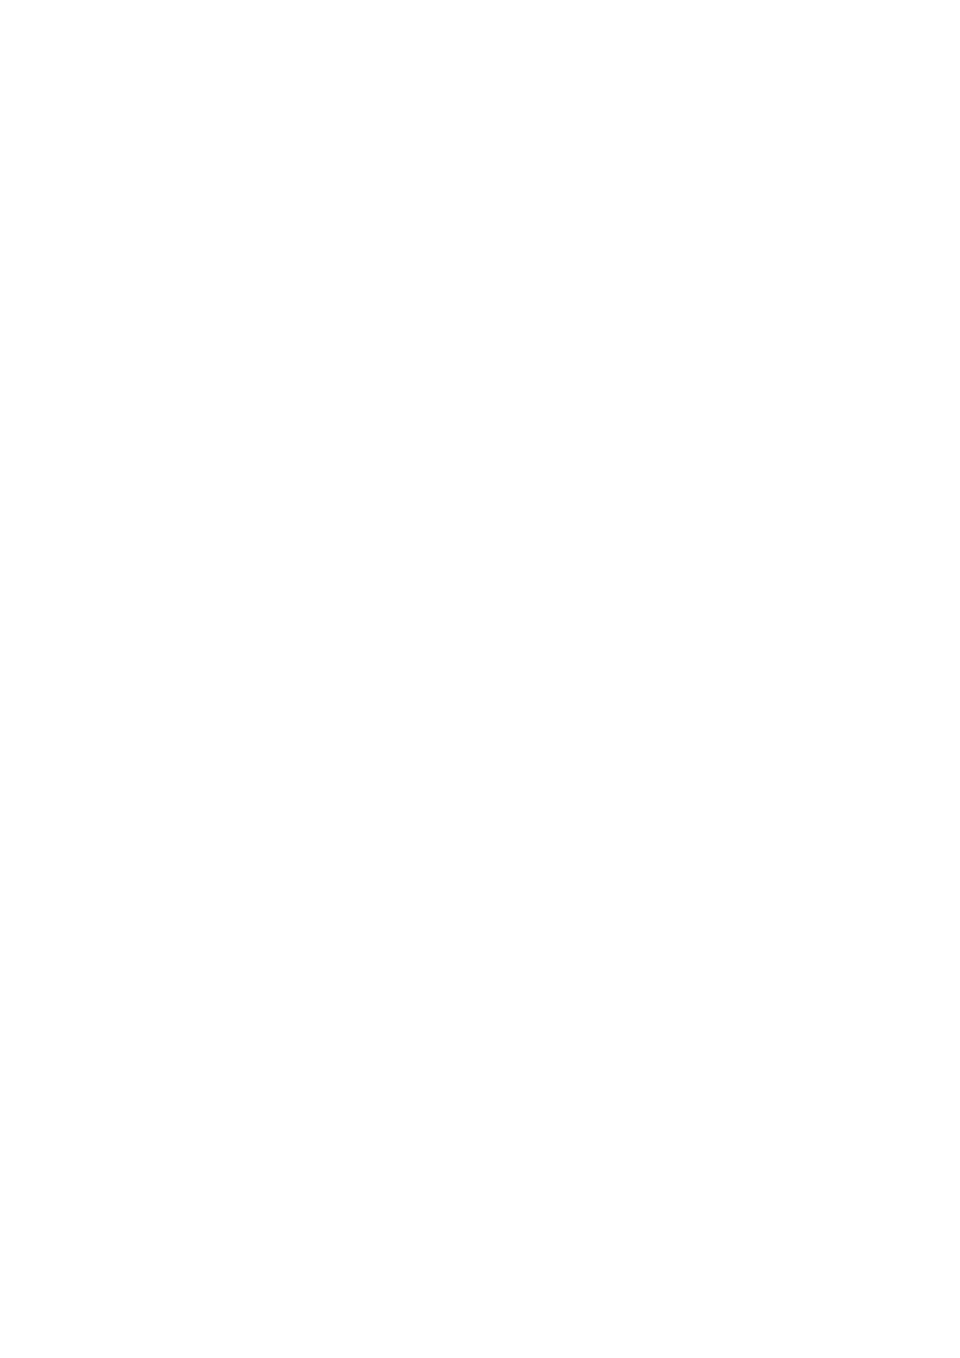 2014 RS 16/2014 Tilsagn på søknad om tilskudd til vilttiltak 2014 - Tana kommune - Migrasjon, populasjonsutvikling og forvaltningsformål RS 17/2014 RS 18/2014 RS 19/2014 Finansiering av